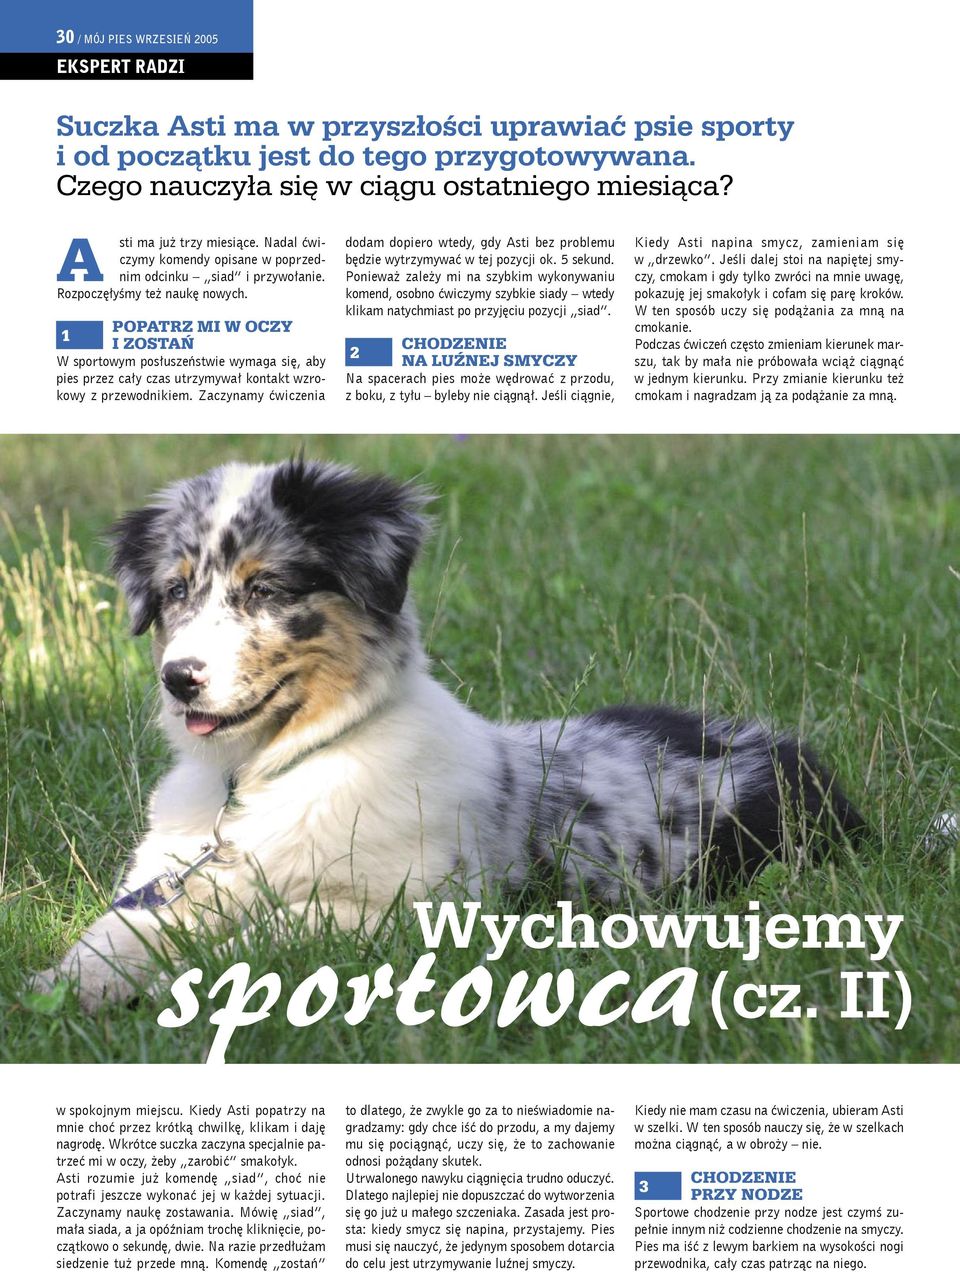 POPATRZ MI W OCZY 1 I ZOSTAŃ W sportowym posłuszeństwie wymaga się, aby pies przez cały czas utrzymywał kontakt wzrokowy z przewodnikiem.